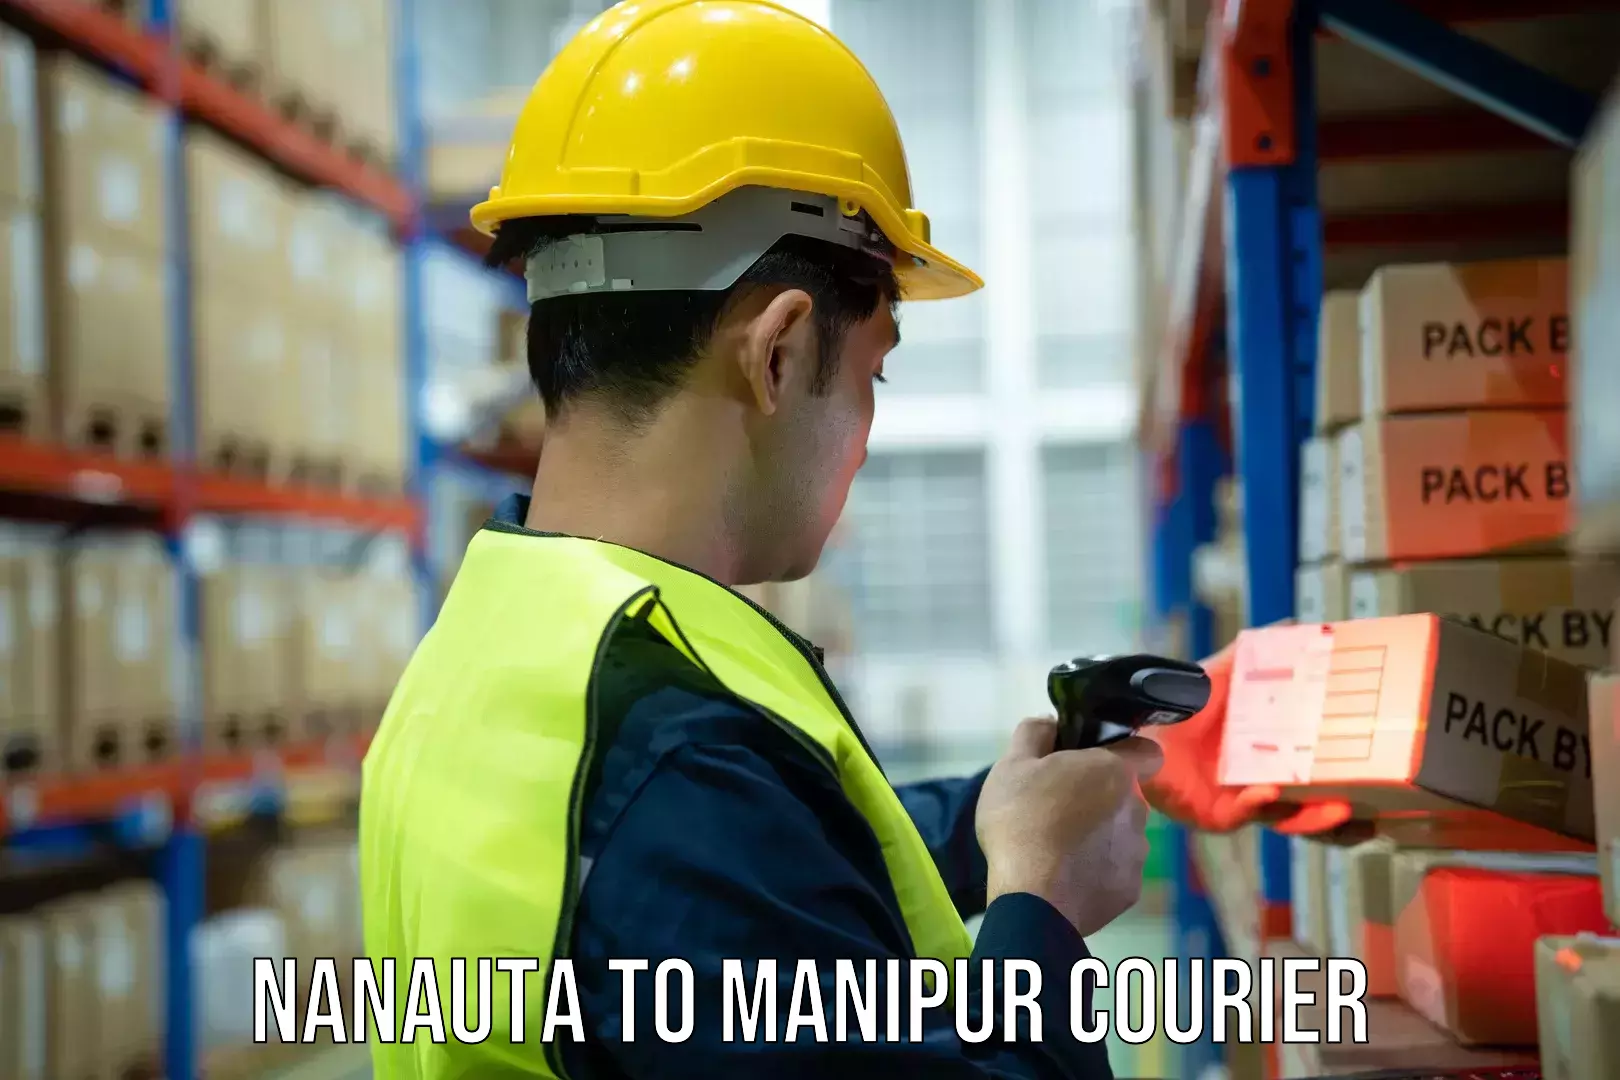 Courier service comparison Nanauta to IIIT Senapati